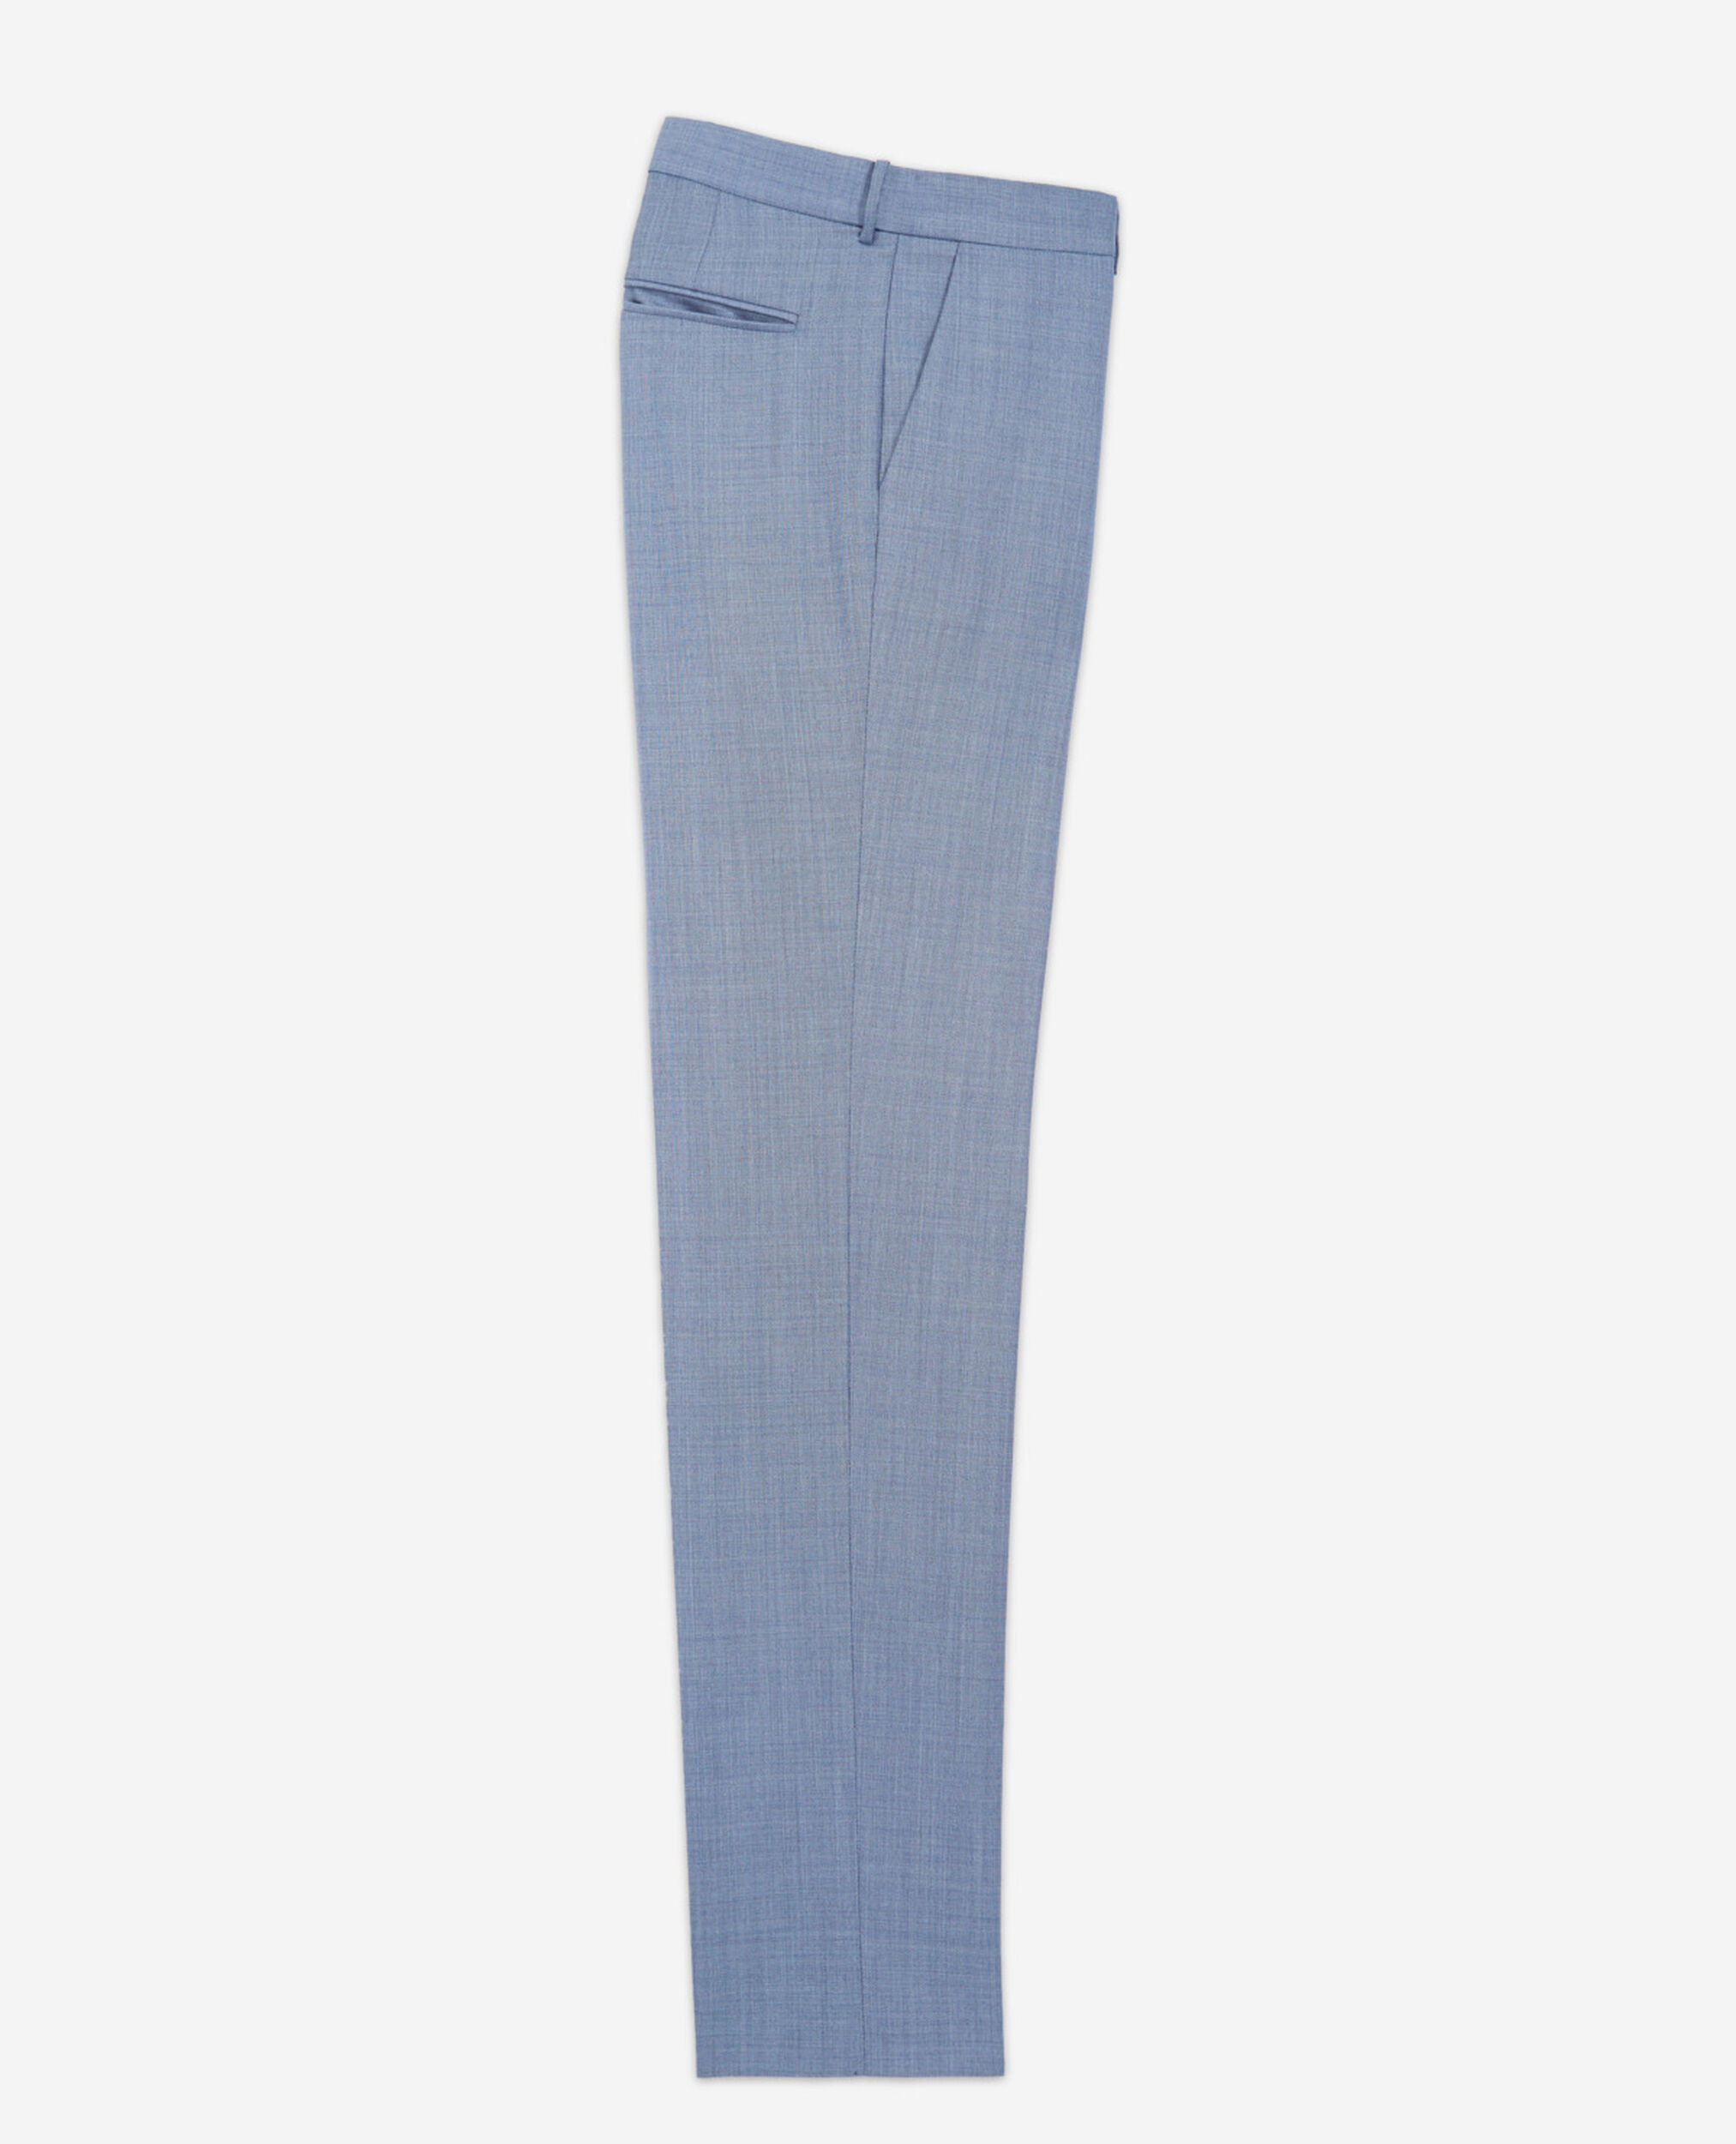 Pantalon costume laine bleu clair ajusté, SKY, hi-res image number null